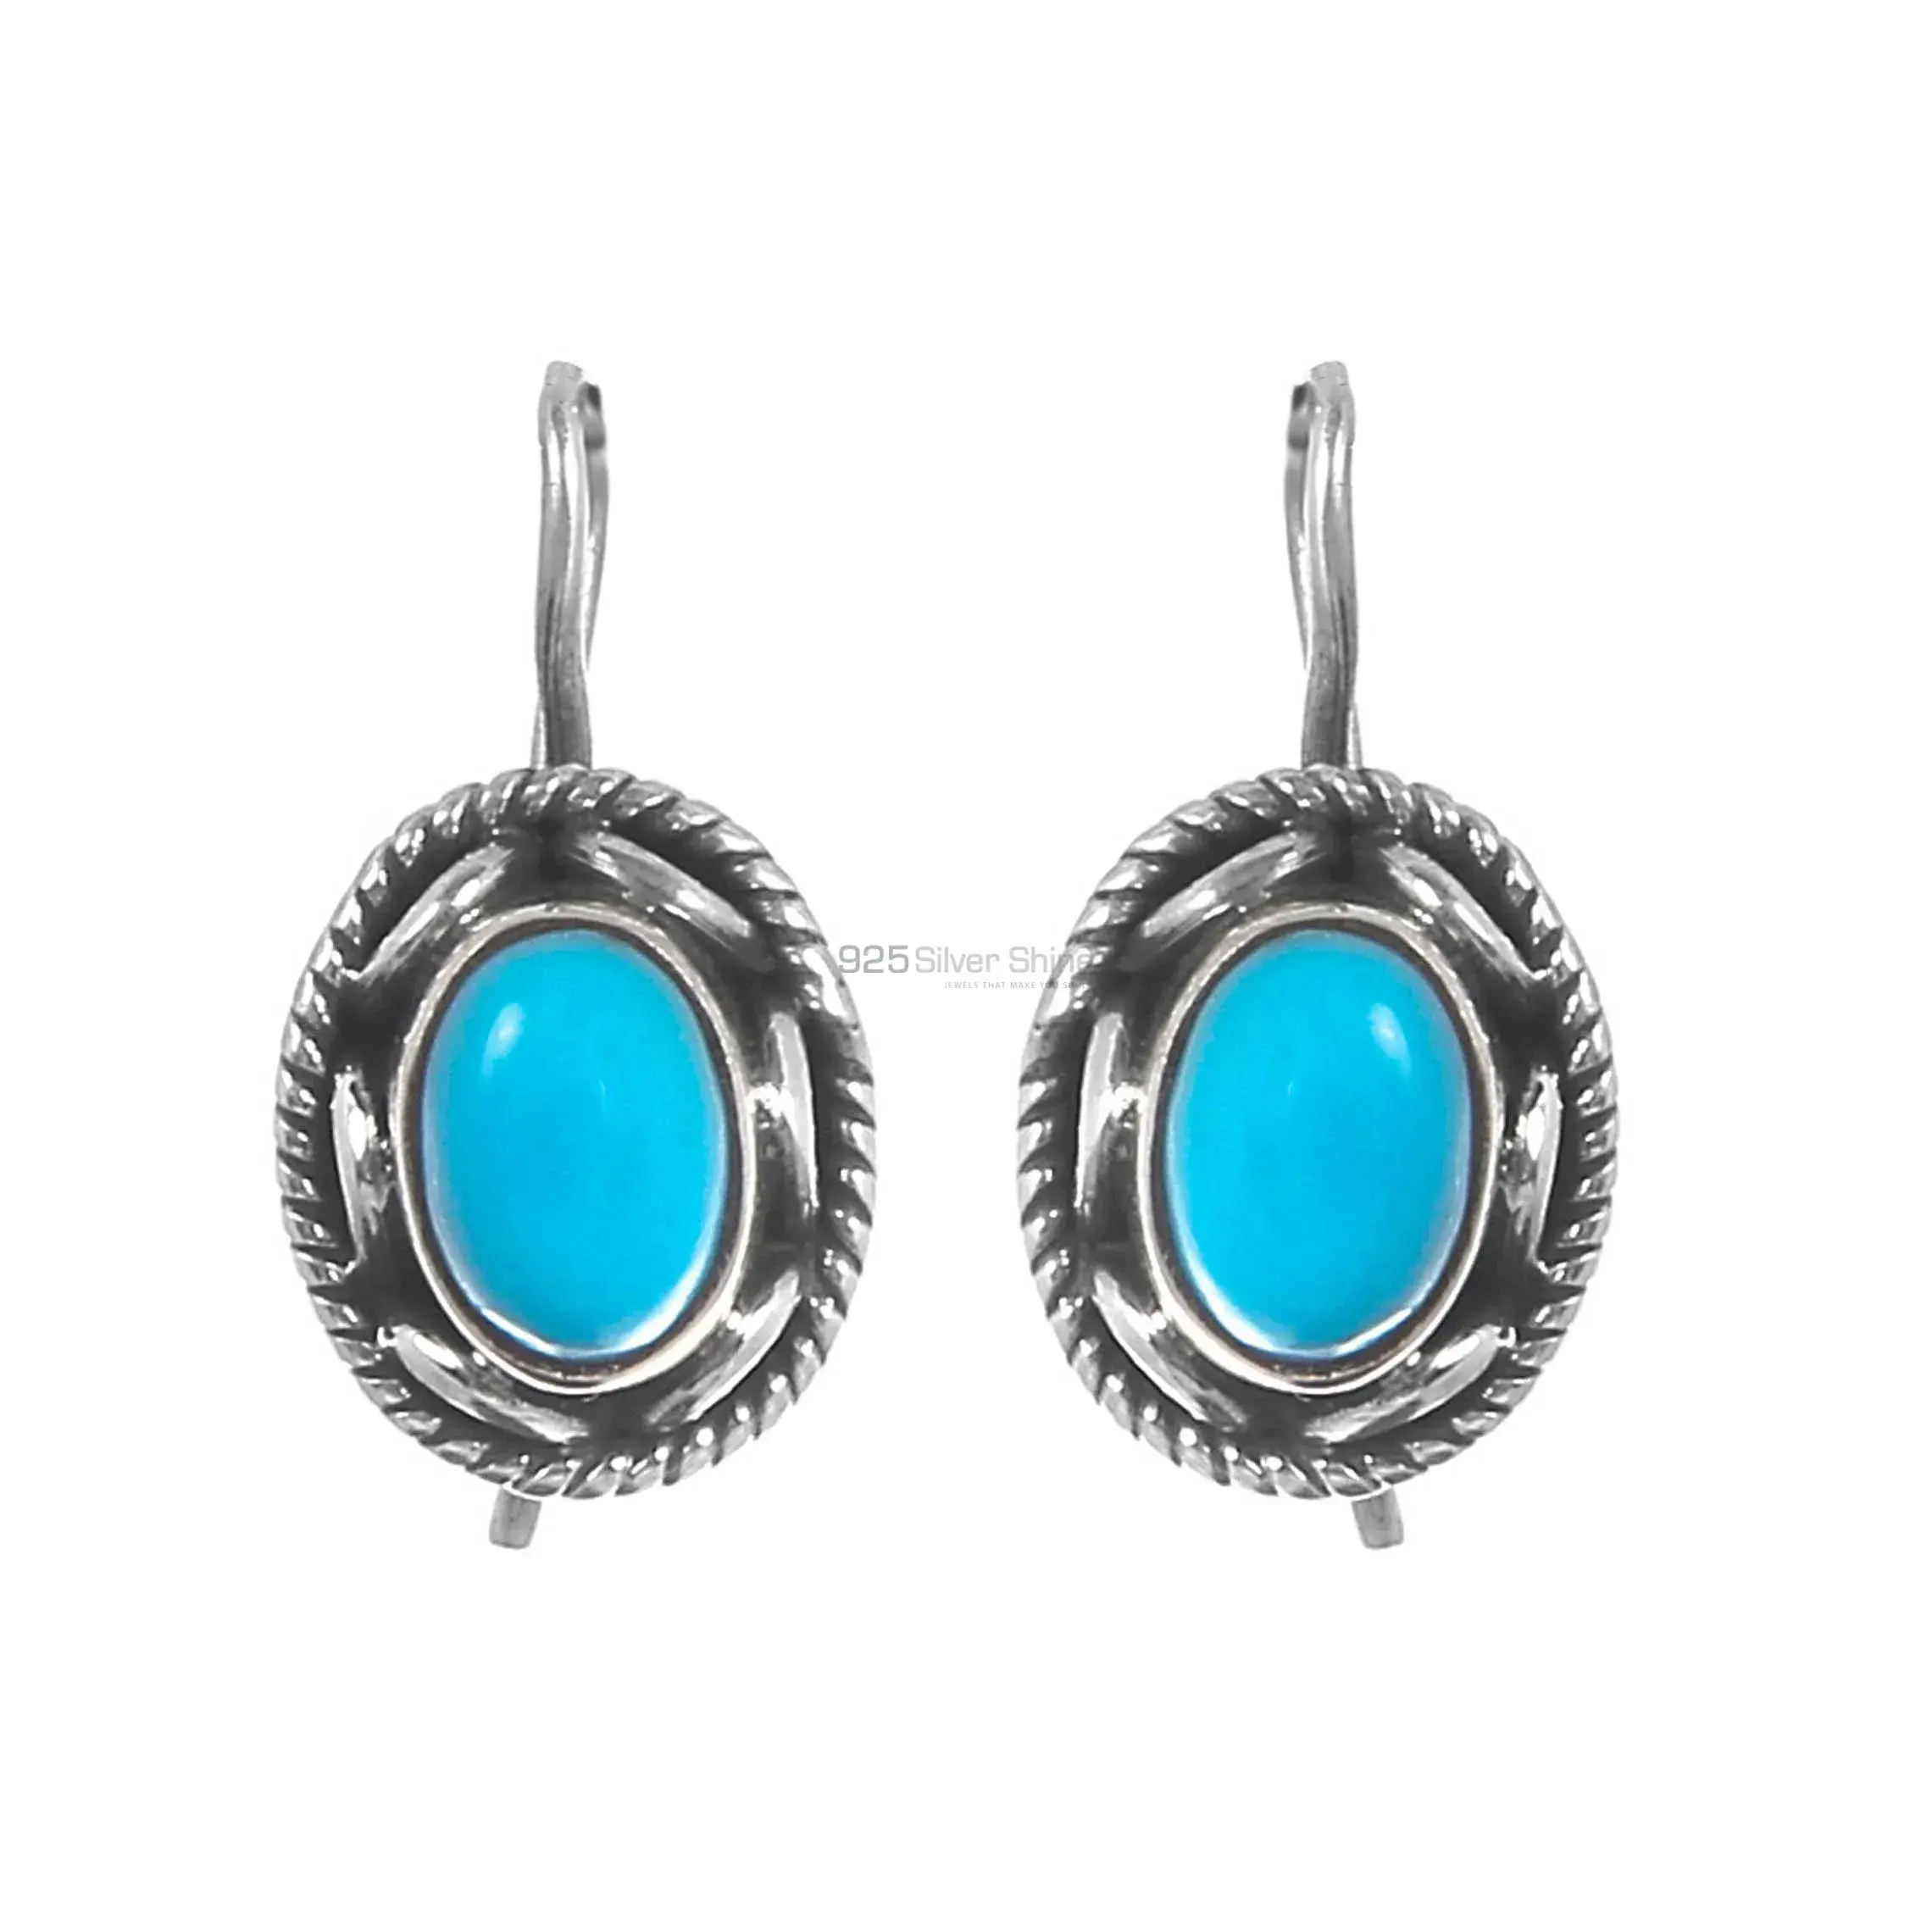 Blue Turquoise Gemstone Earrings In Fine 925 Sterling Silver 925SE315